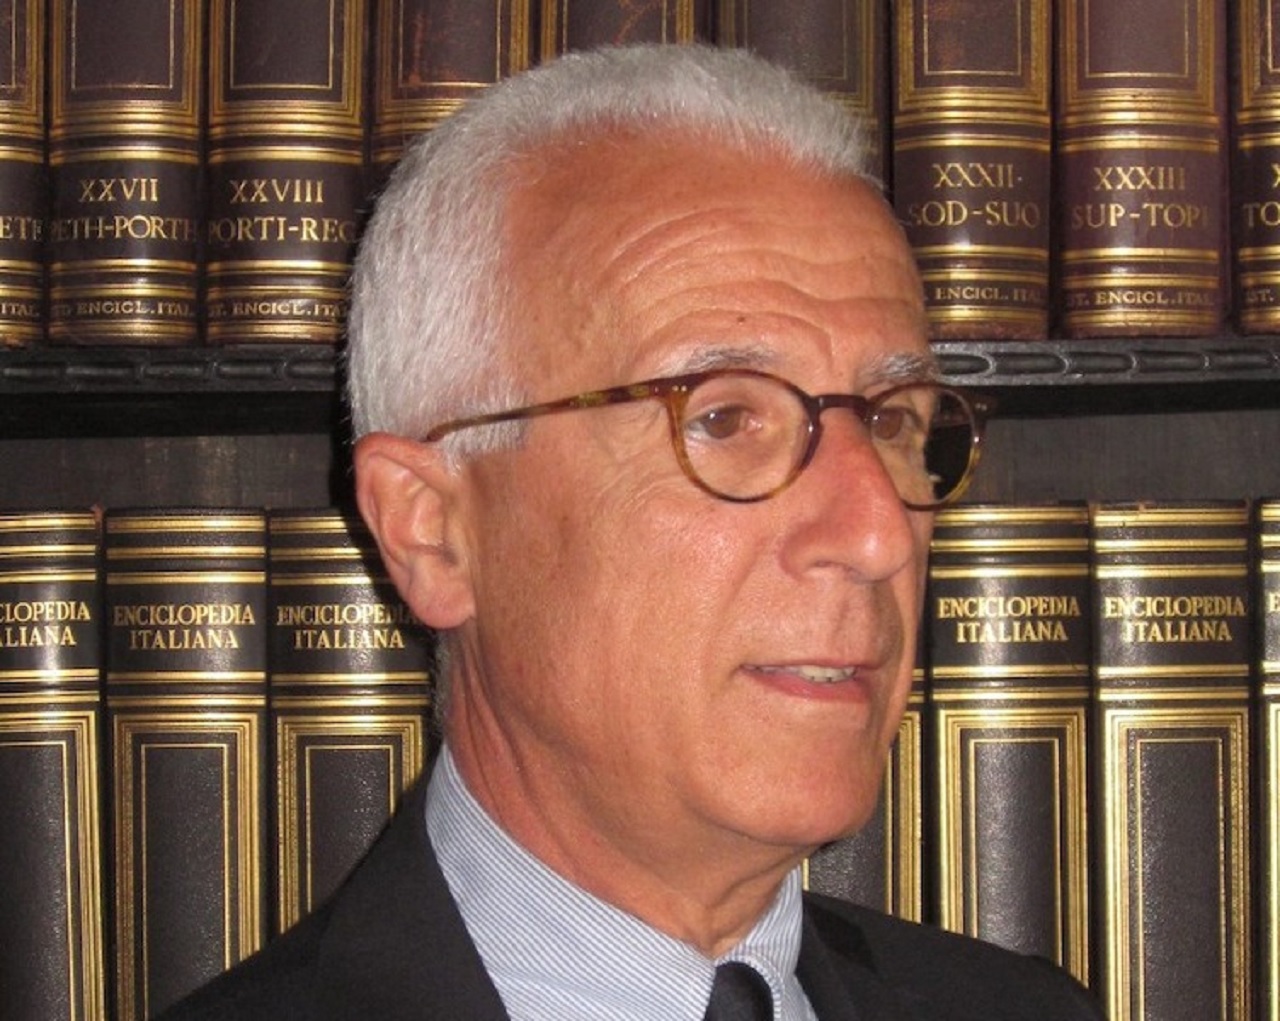 Morto il professore Eugenio Fiorentino, figura di spicco dell’Università di Palermo